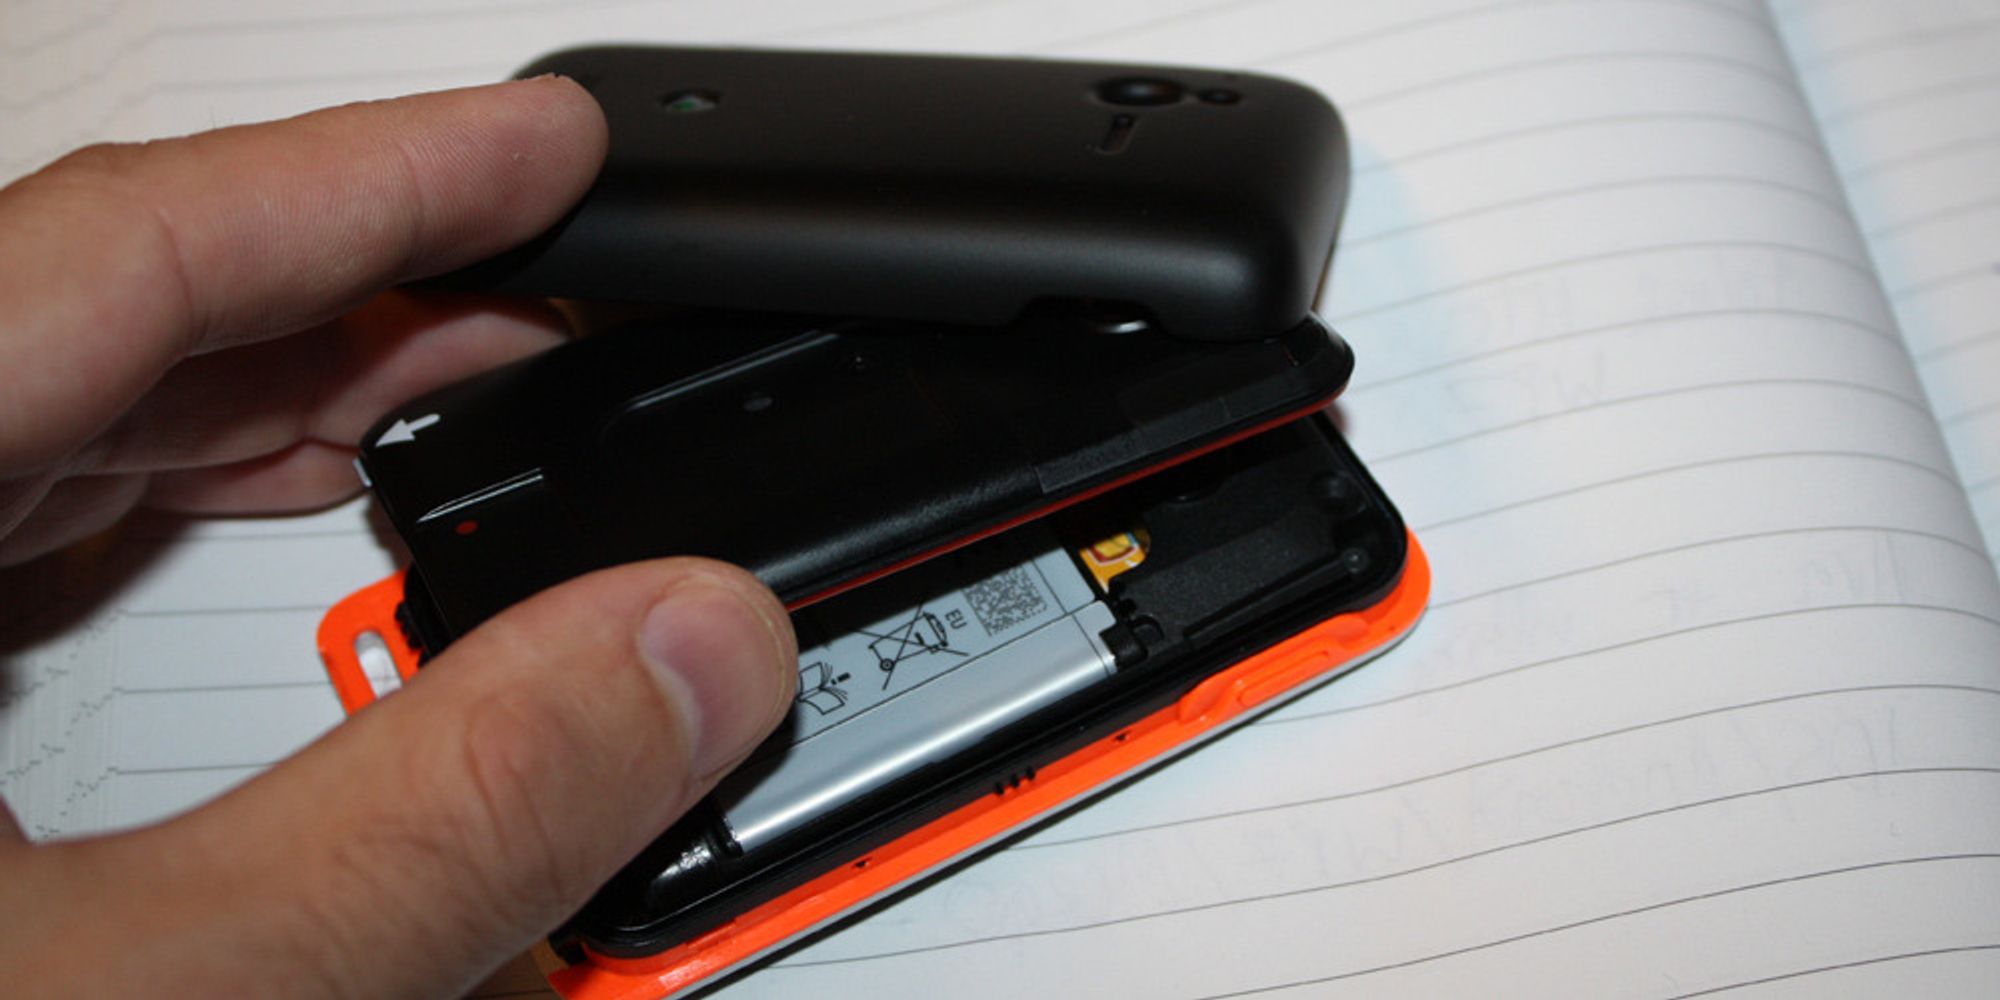 Unboxing av Sony Ericsson Xperia Active